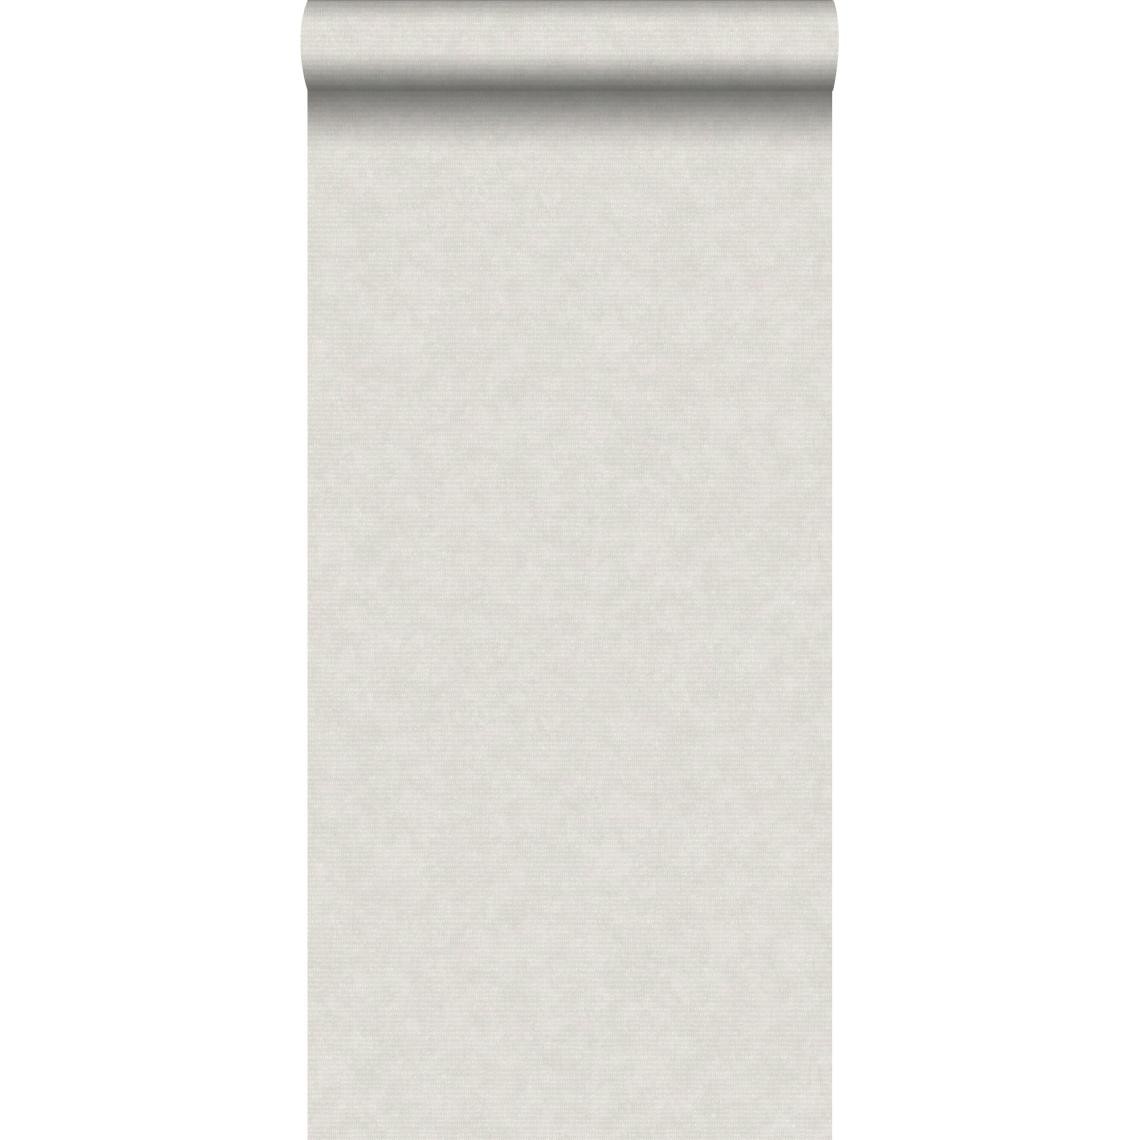 ESTAhome - ESTAhome papier peint uni gris clair - 148304 - 53 cm x 10,05 m - Papier peint